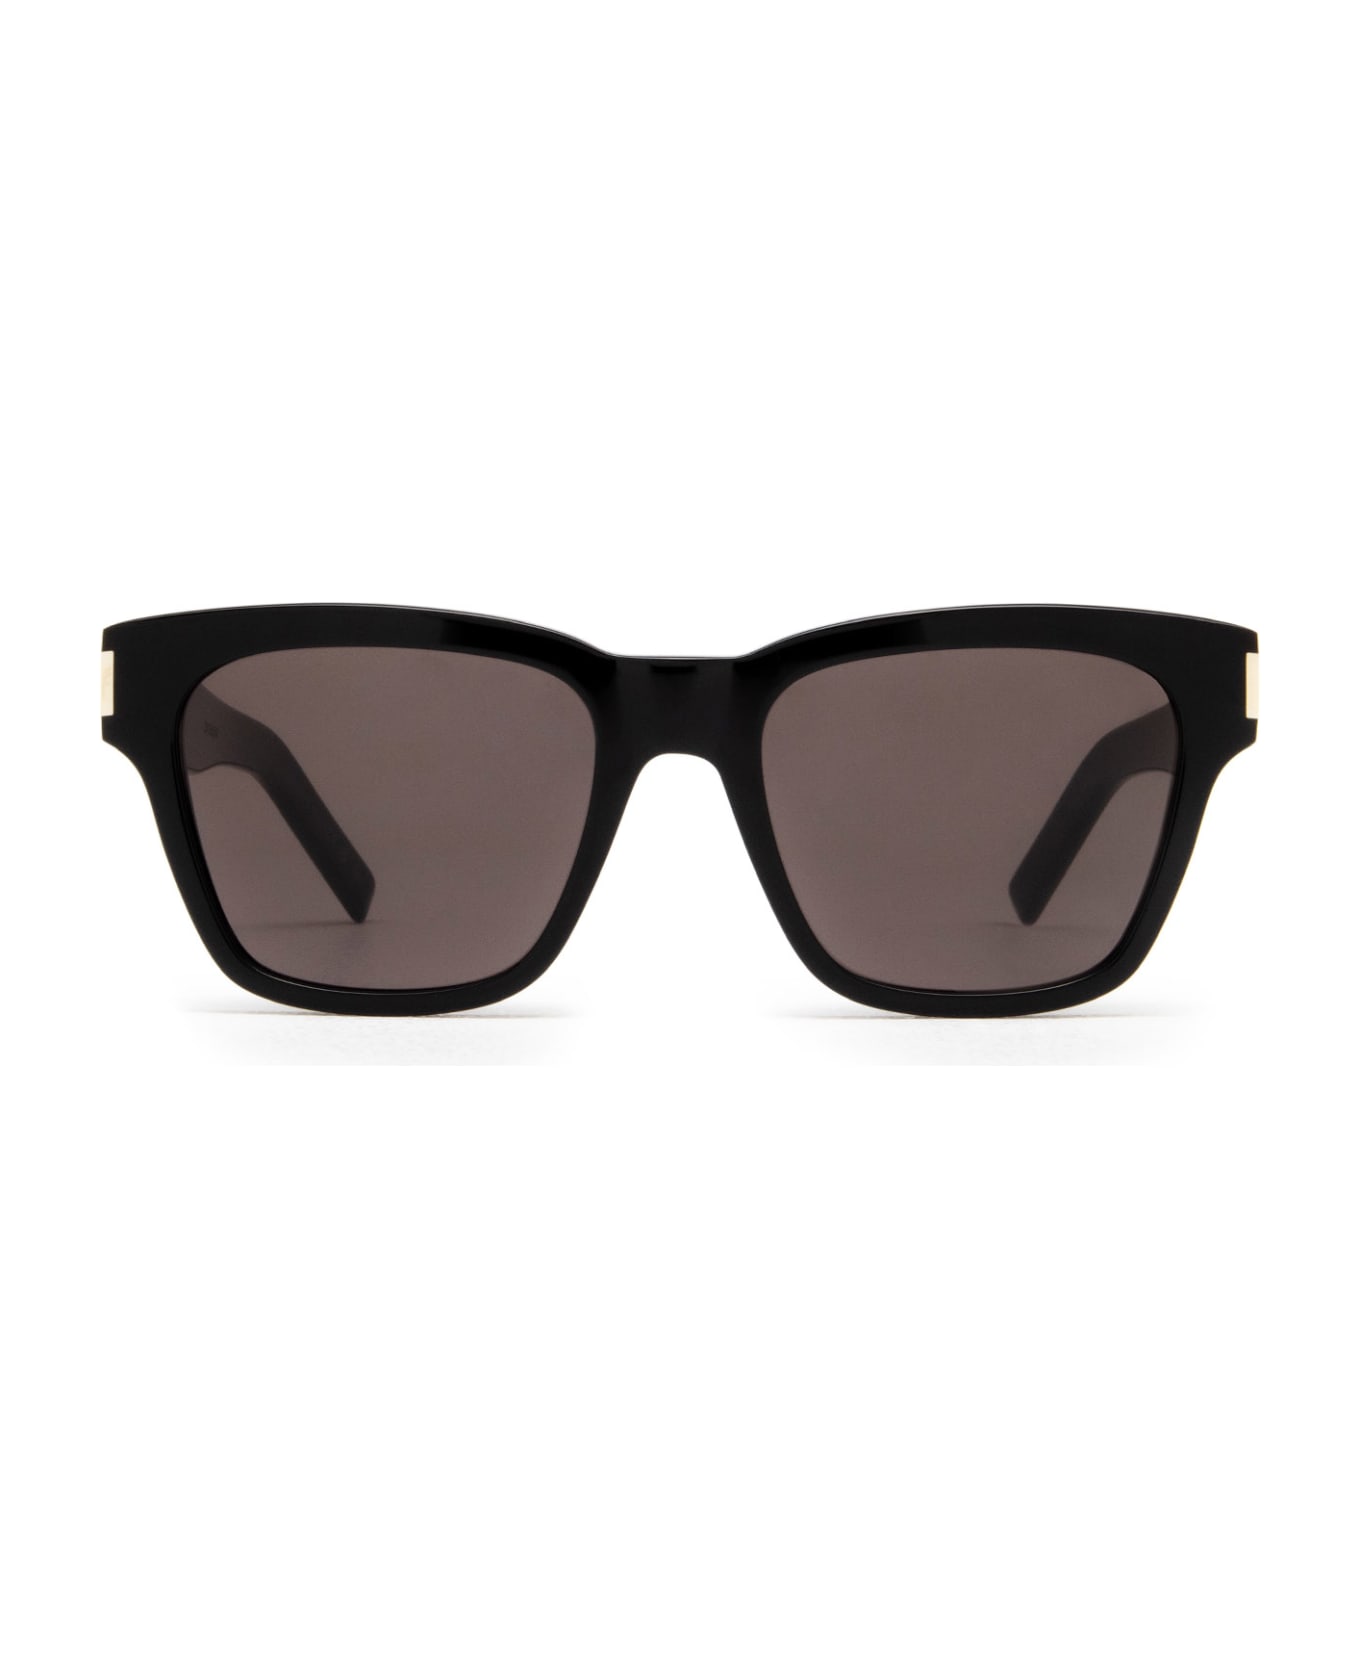 Saint Laurent Eyewear Sl 560 Black Sunglasses - Black